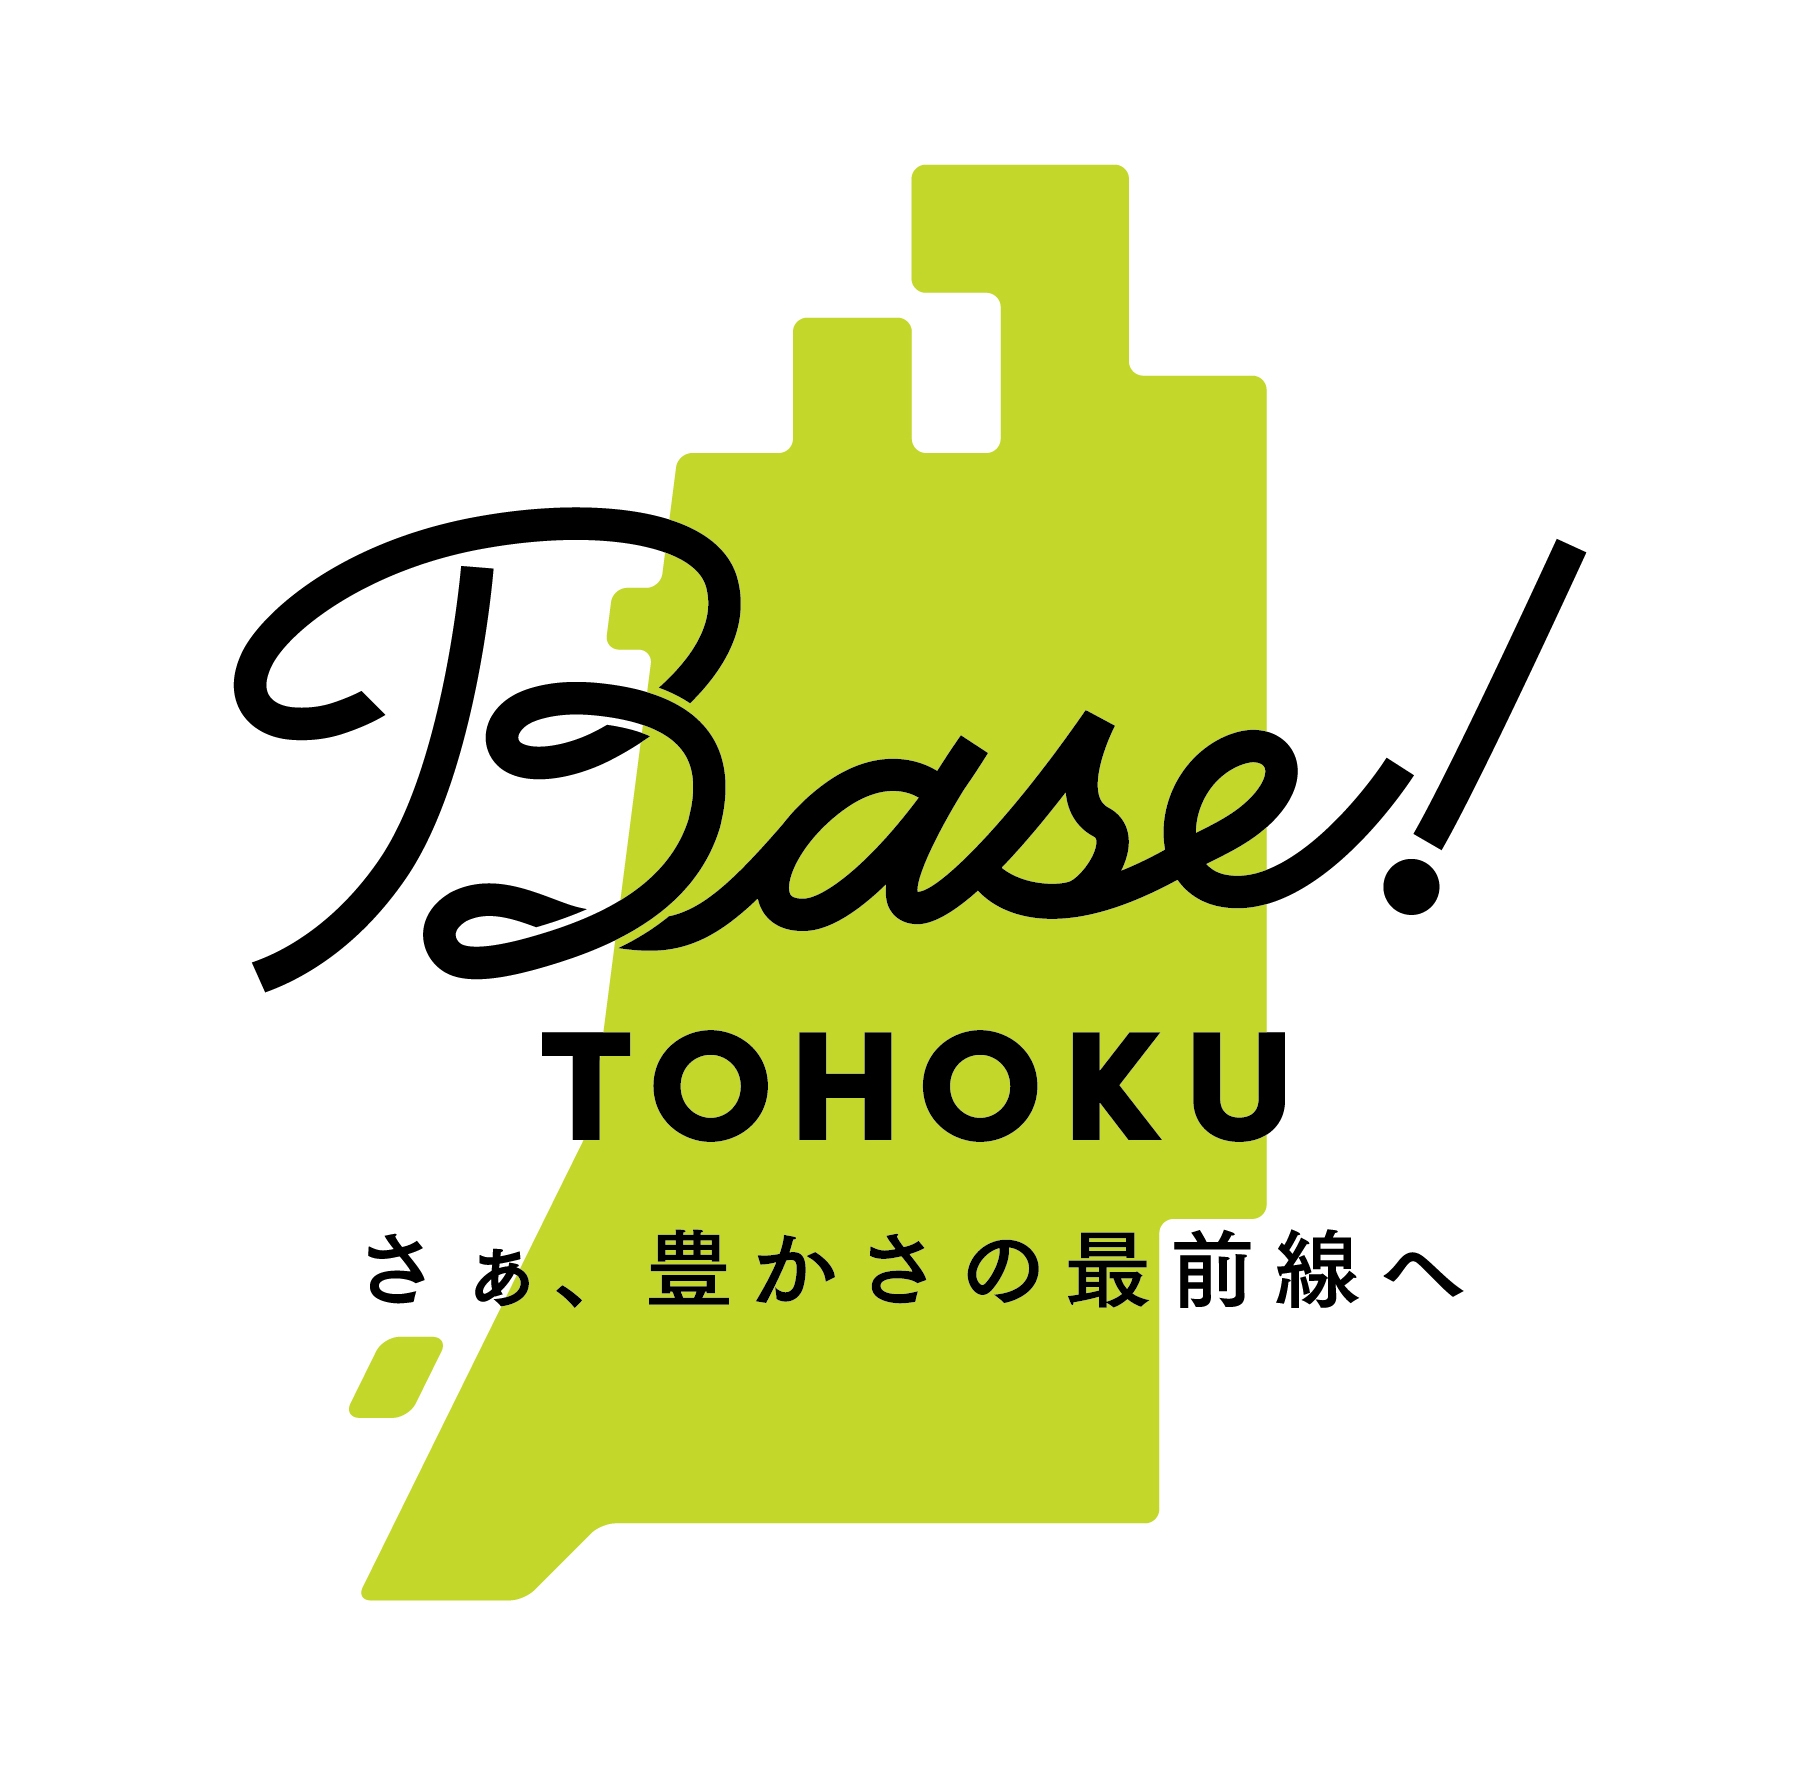 【連泊】スパリゾートハワイアンズ お得な2dayチケット付プラン／2食付〜Base!TOHOKU〜